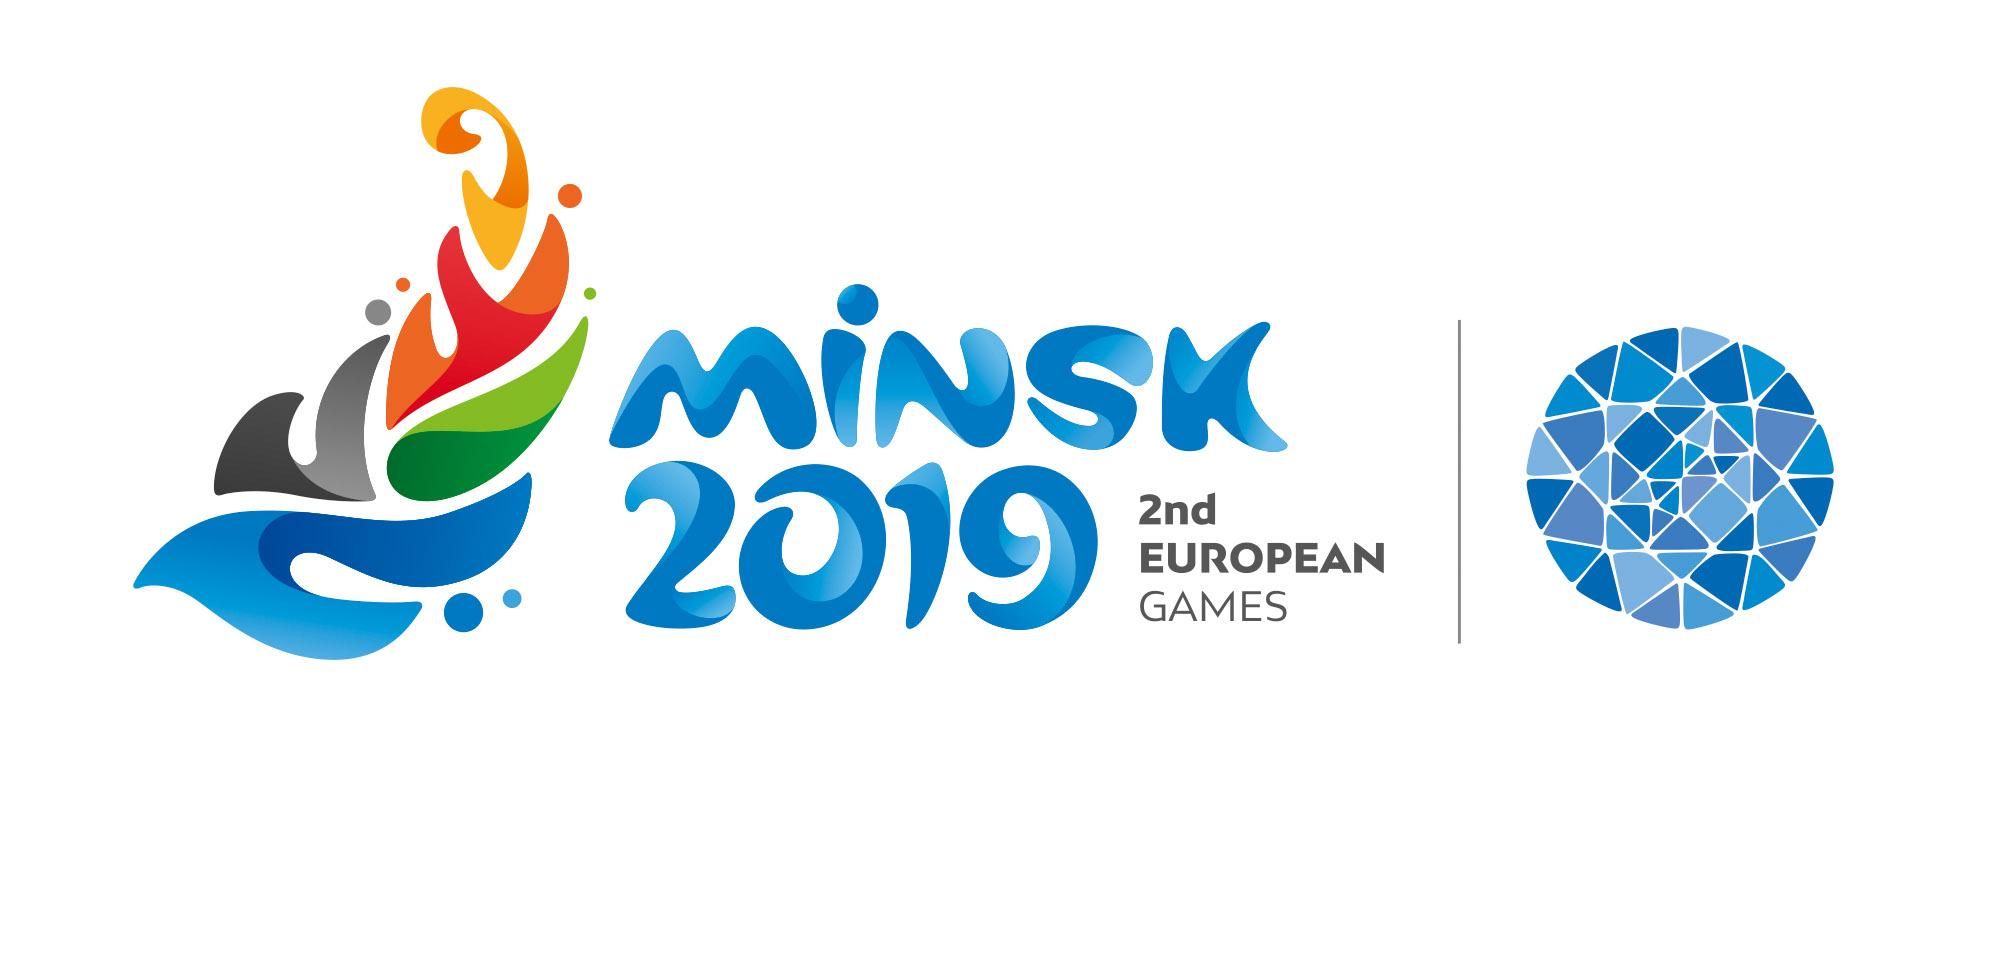 Європейські ігри 2019 у Мінську - дата проведення 